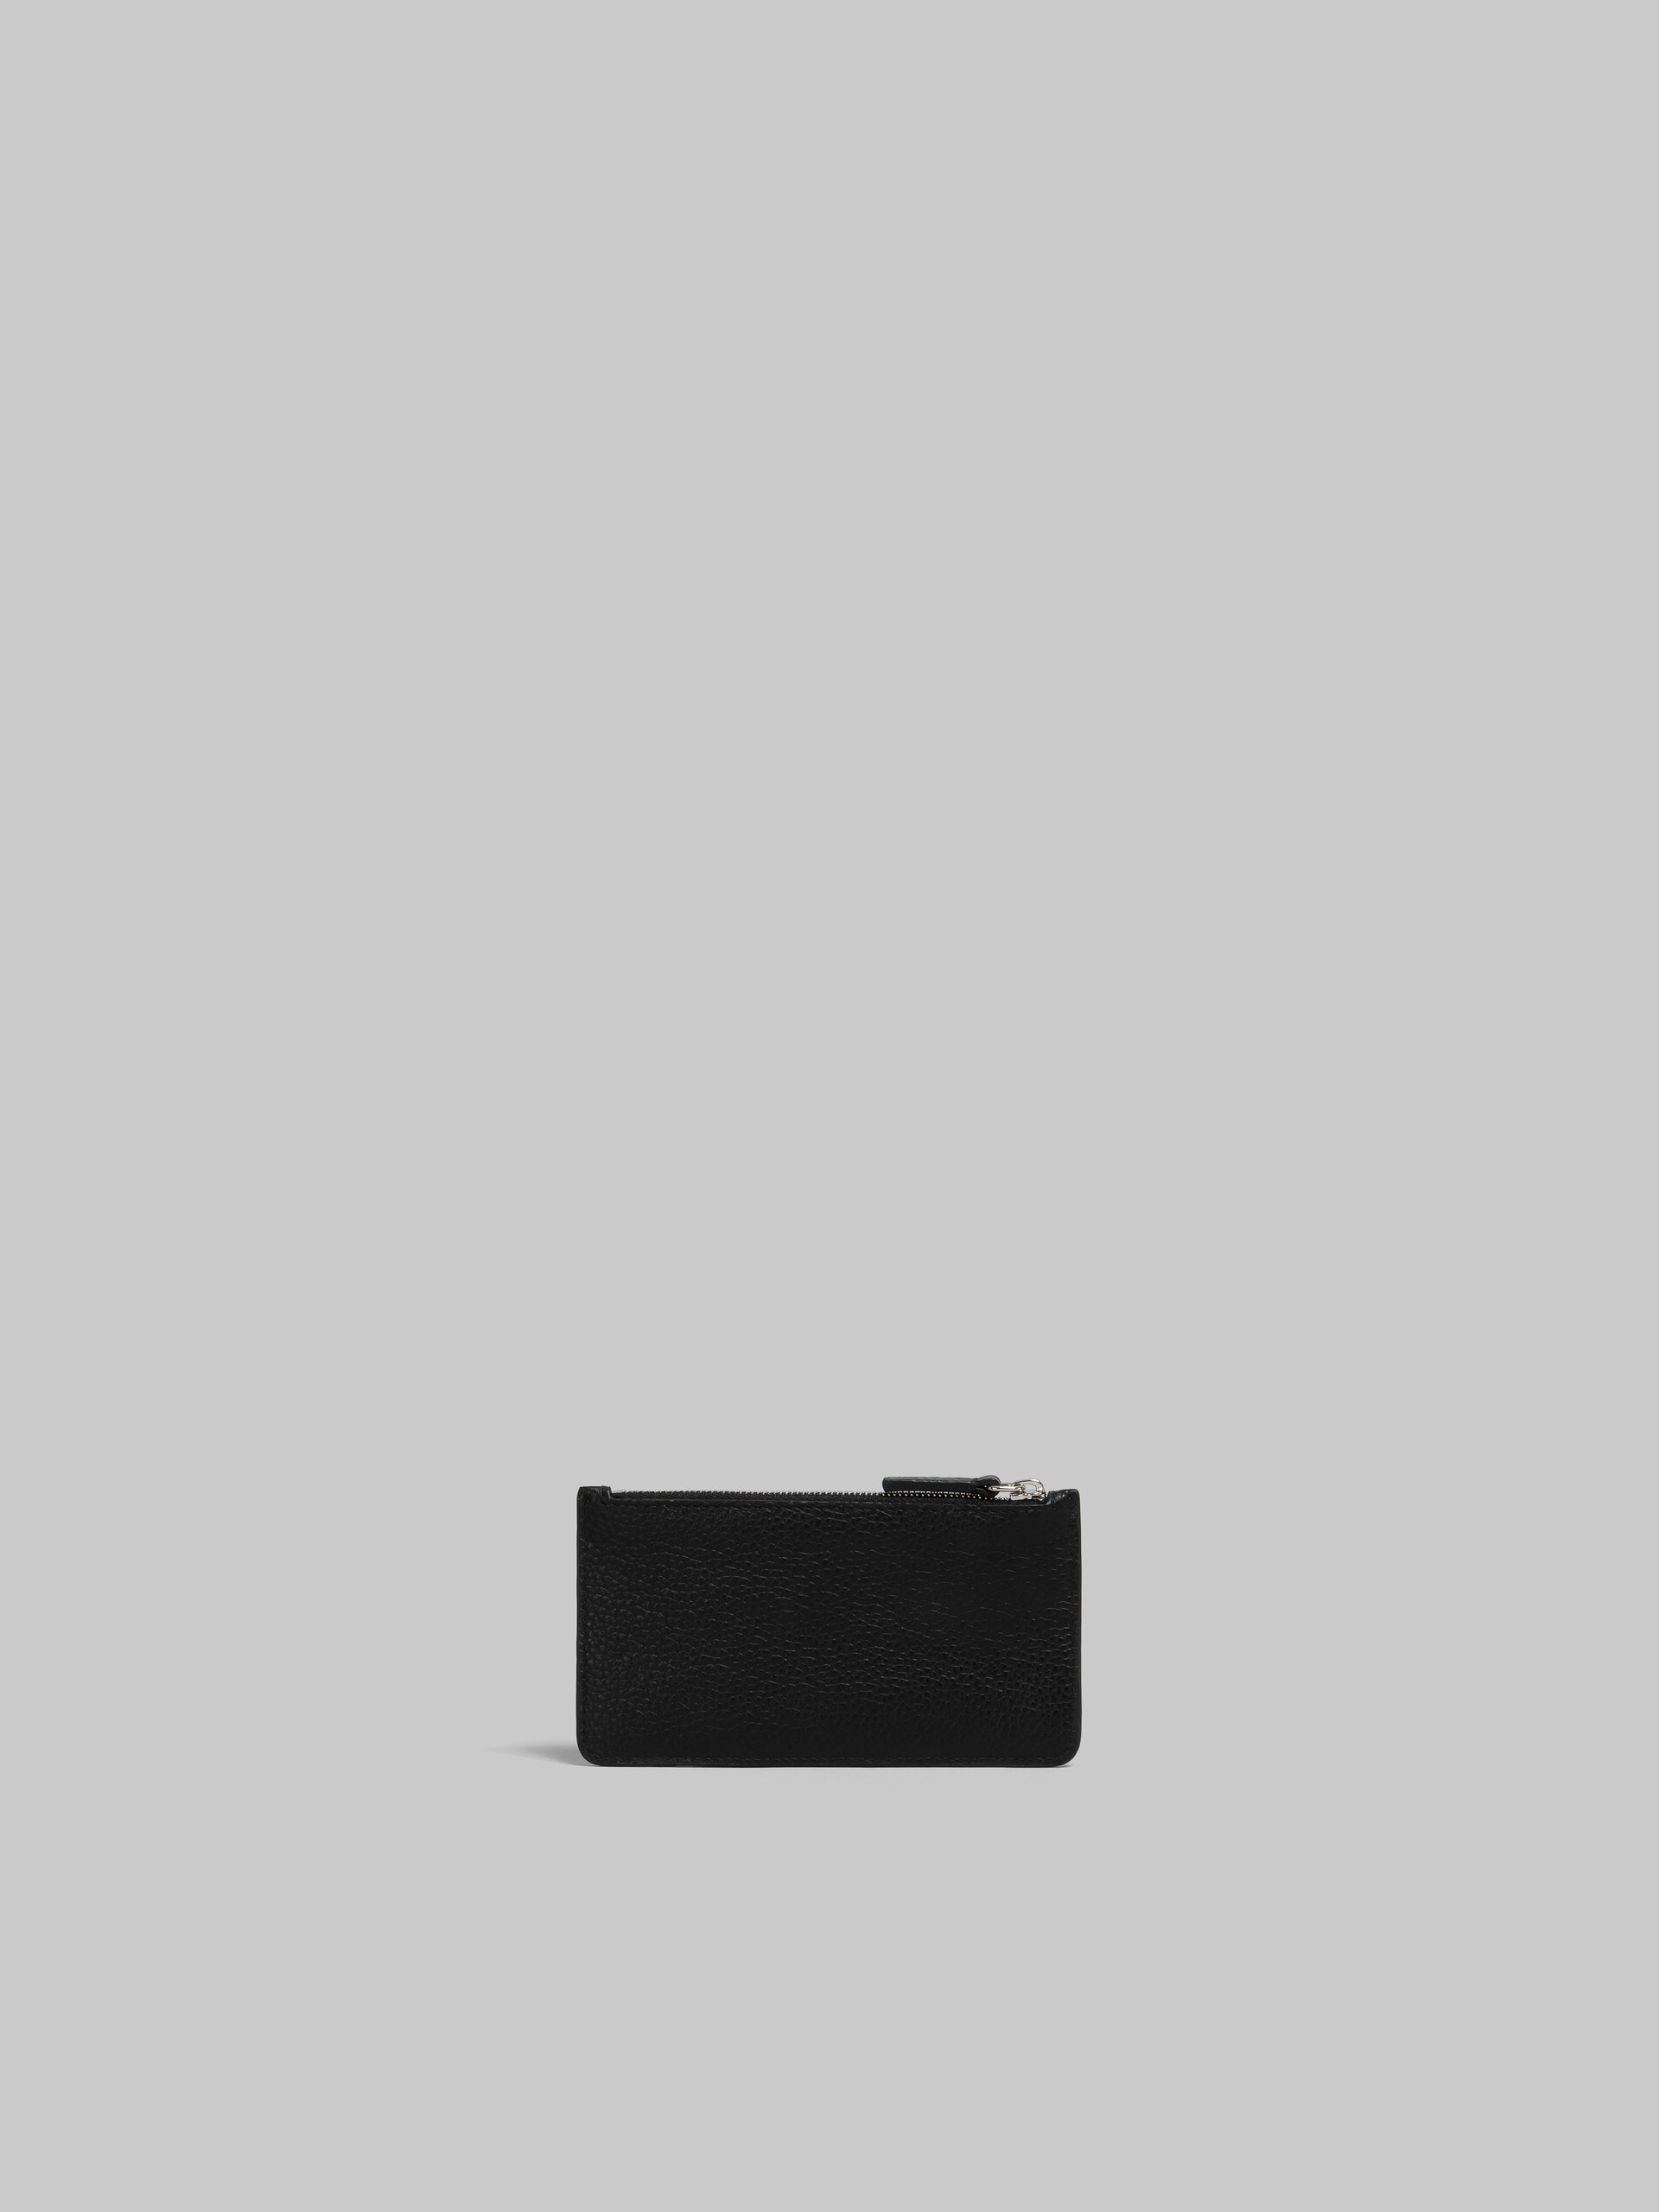 Porte-cartes en cuir noir avec effet raccommodé Marni - Portefeuilles - Image 3